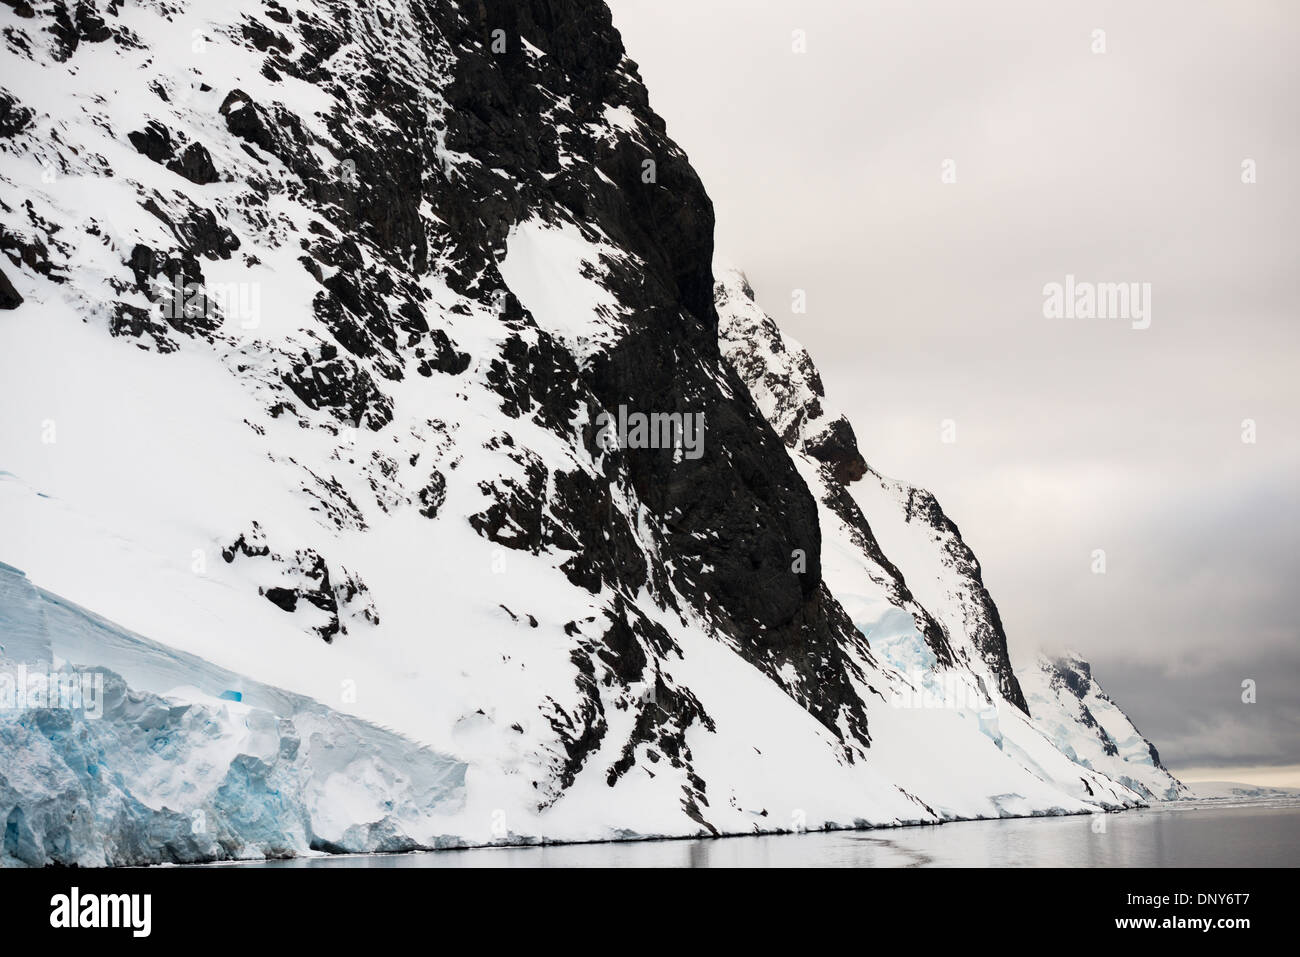 Antartide - ripide pareti rocciose arriva fino alla linea di galleggiamento del canale di Lemaire sulla costa occidentale della penisola antartica. Il Lemaire Channel è talvolta indicata come "Kodak Gap' in un cenno al suo famoso vedute panoramiche. Foto Stock